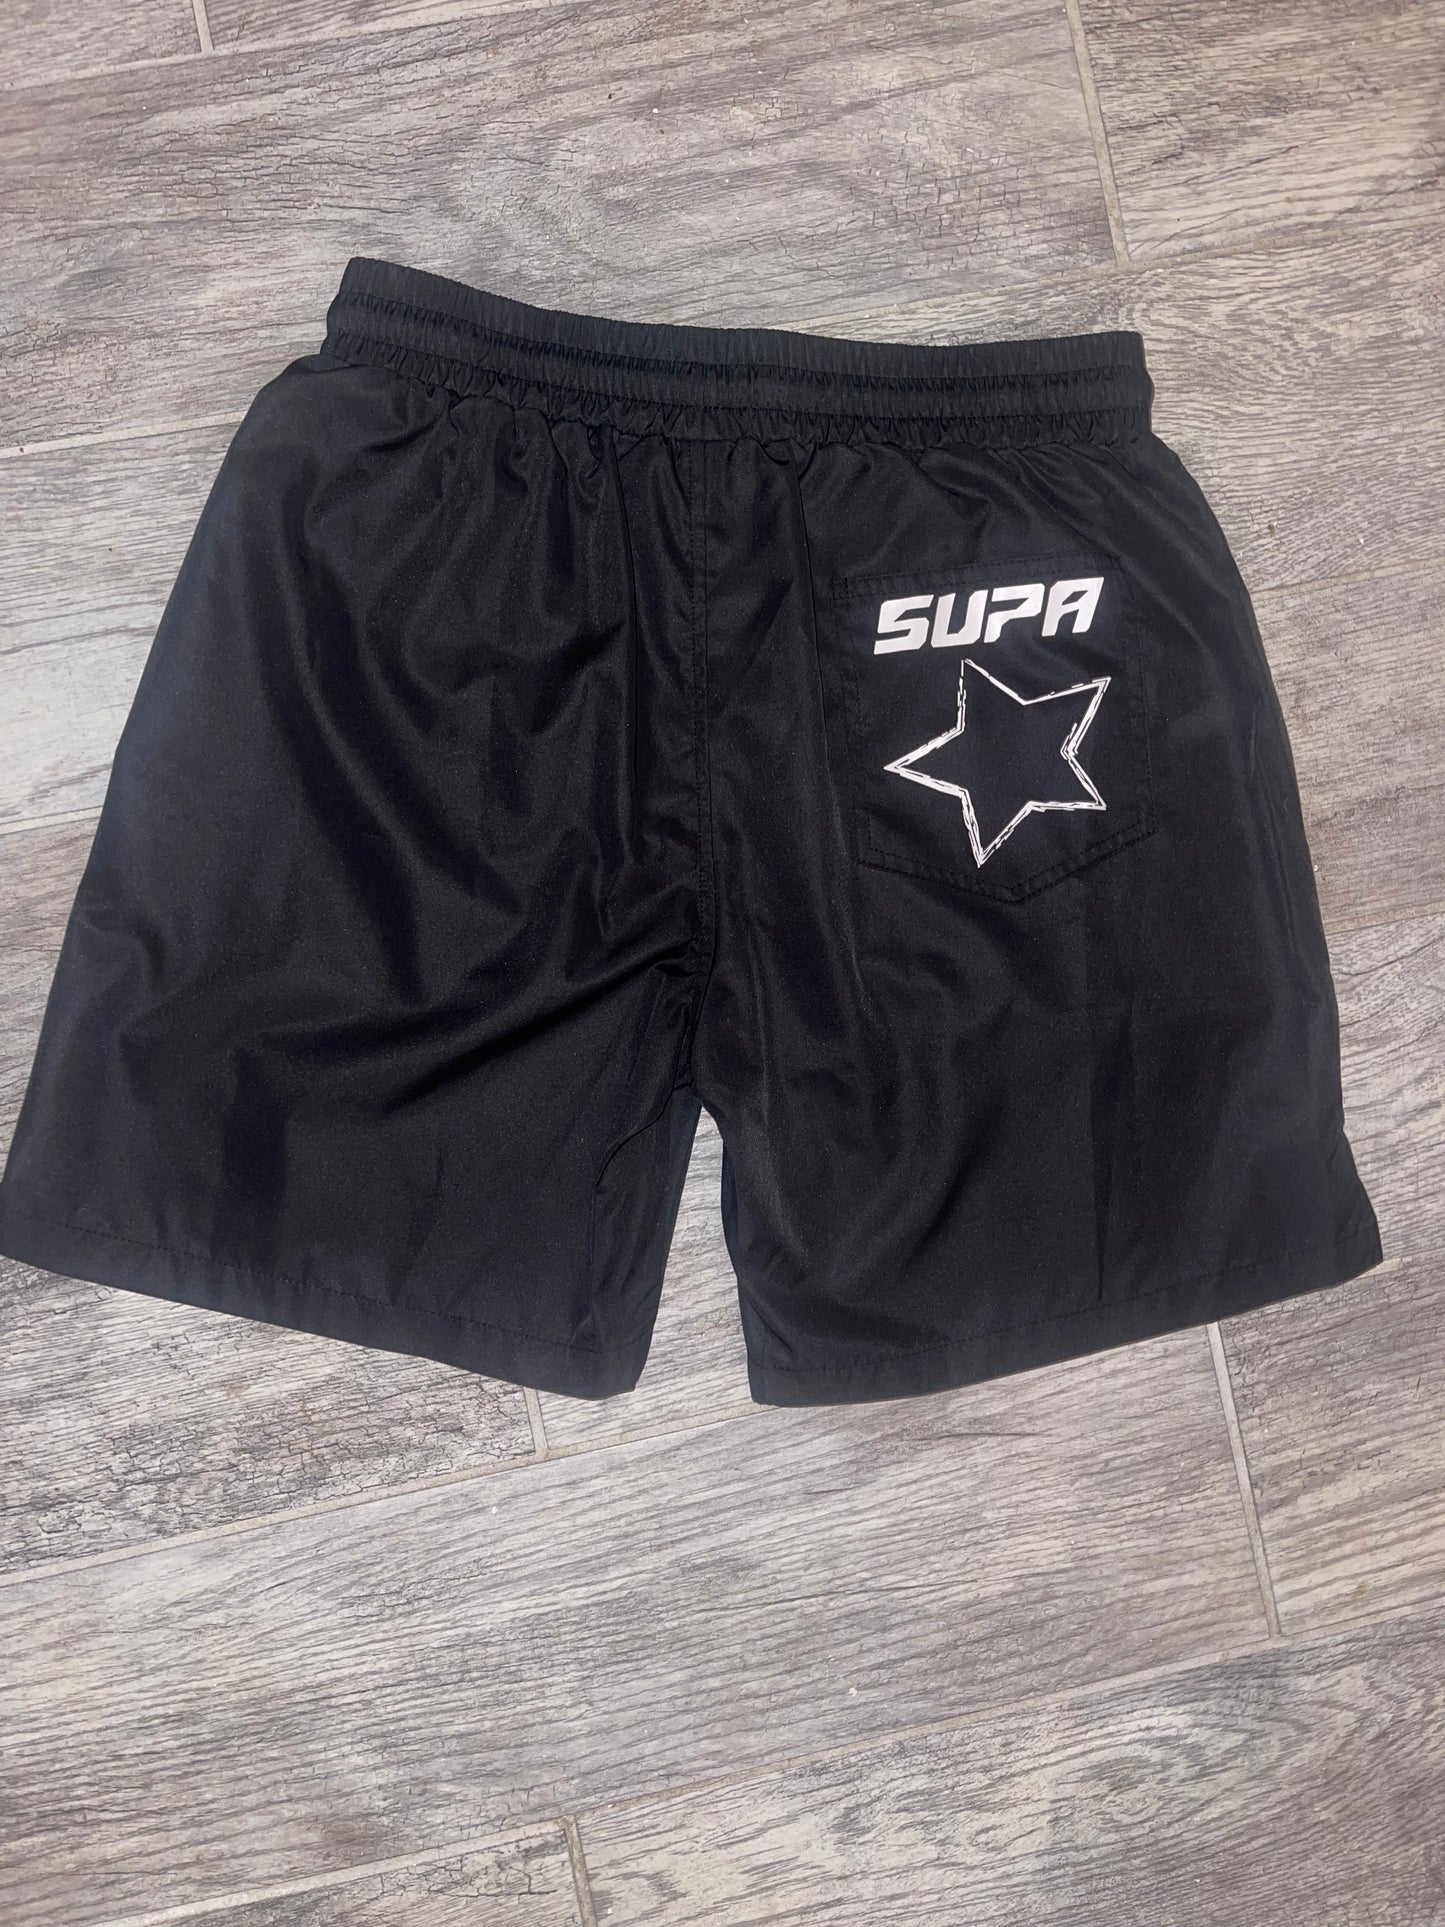 SUPA Flame shorts